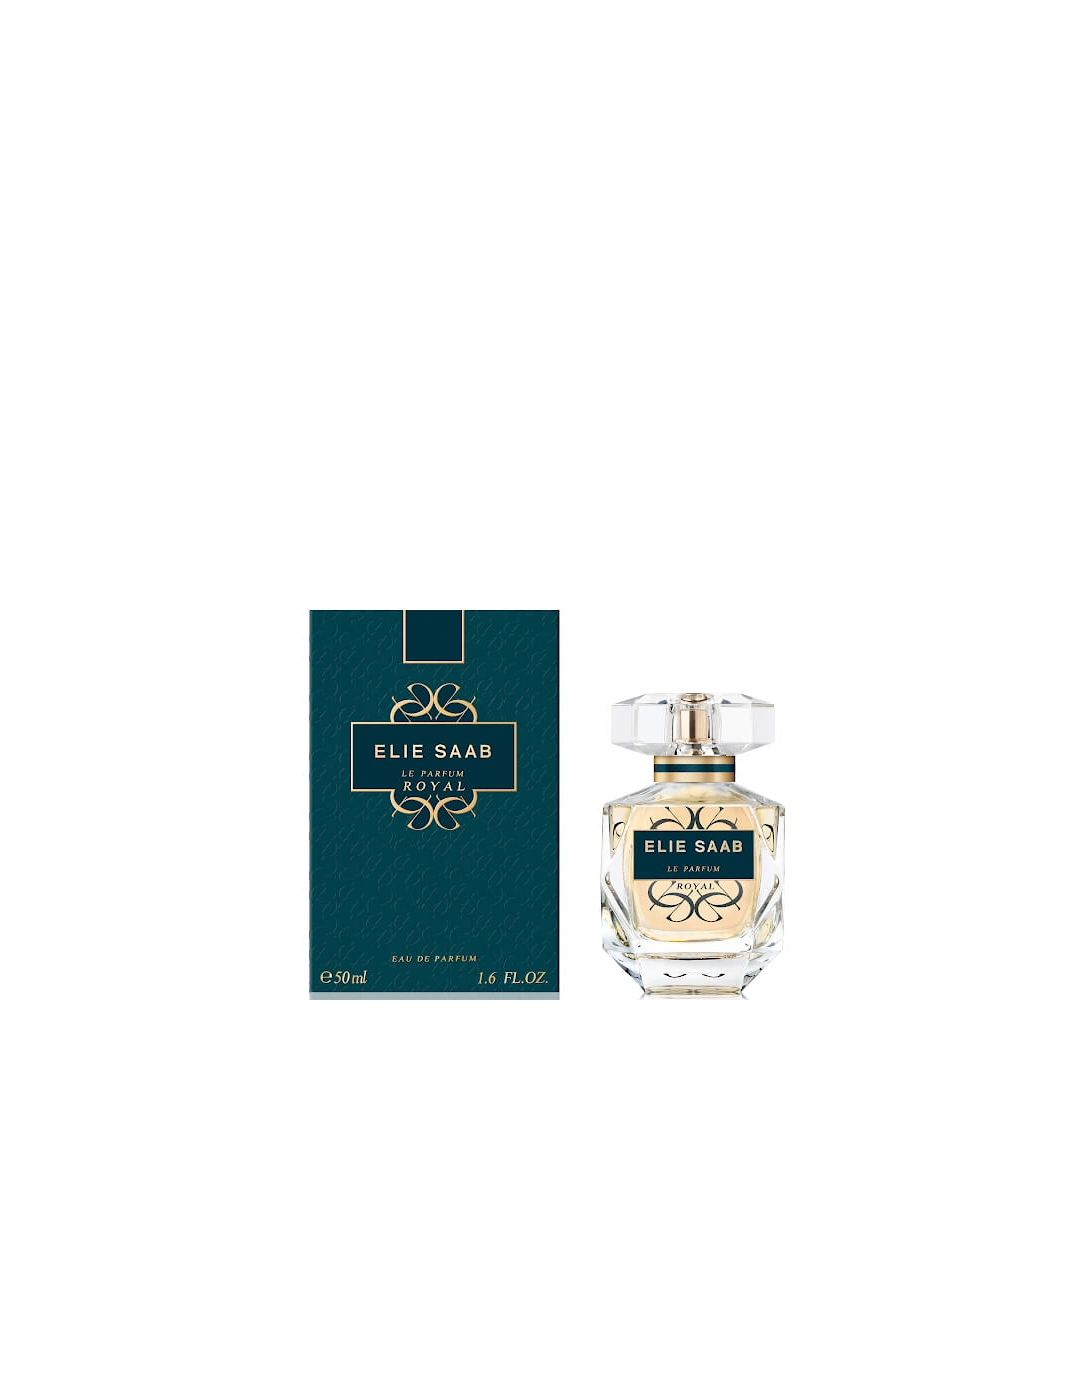 Le Parfum Royal Eau de Parfum 50ml, 2 of 1